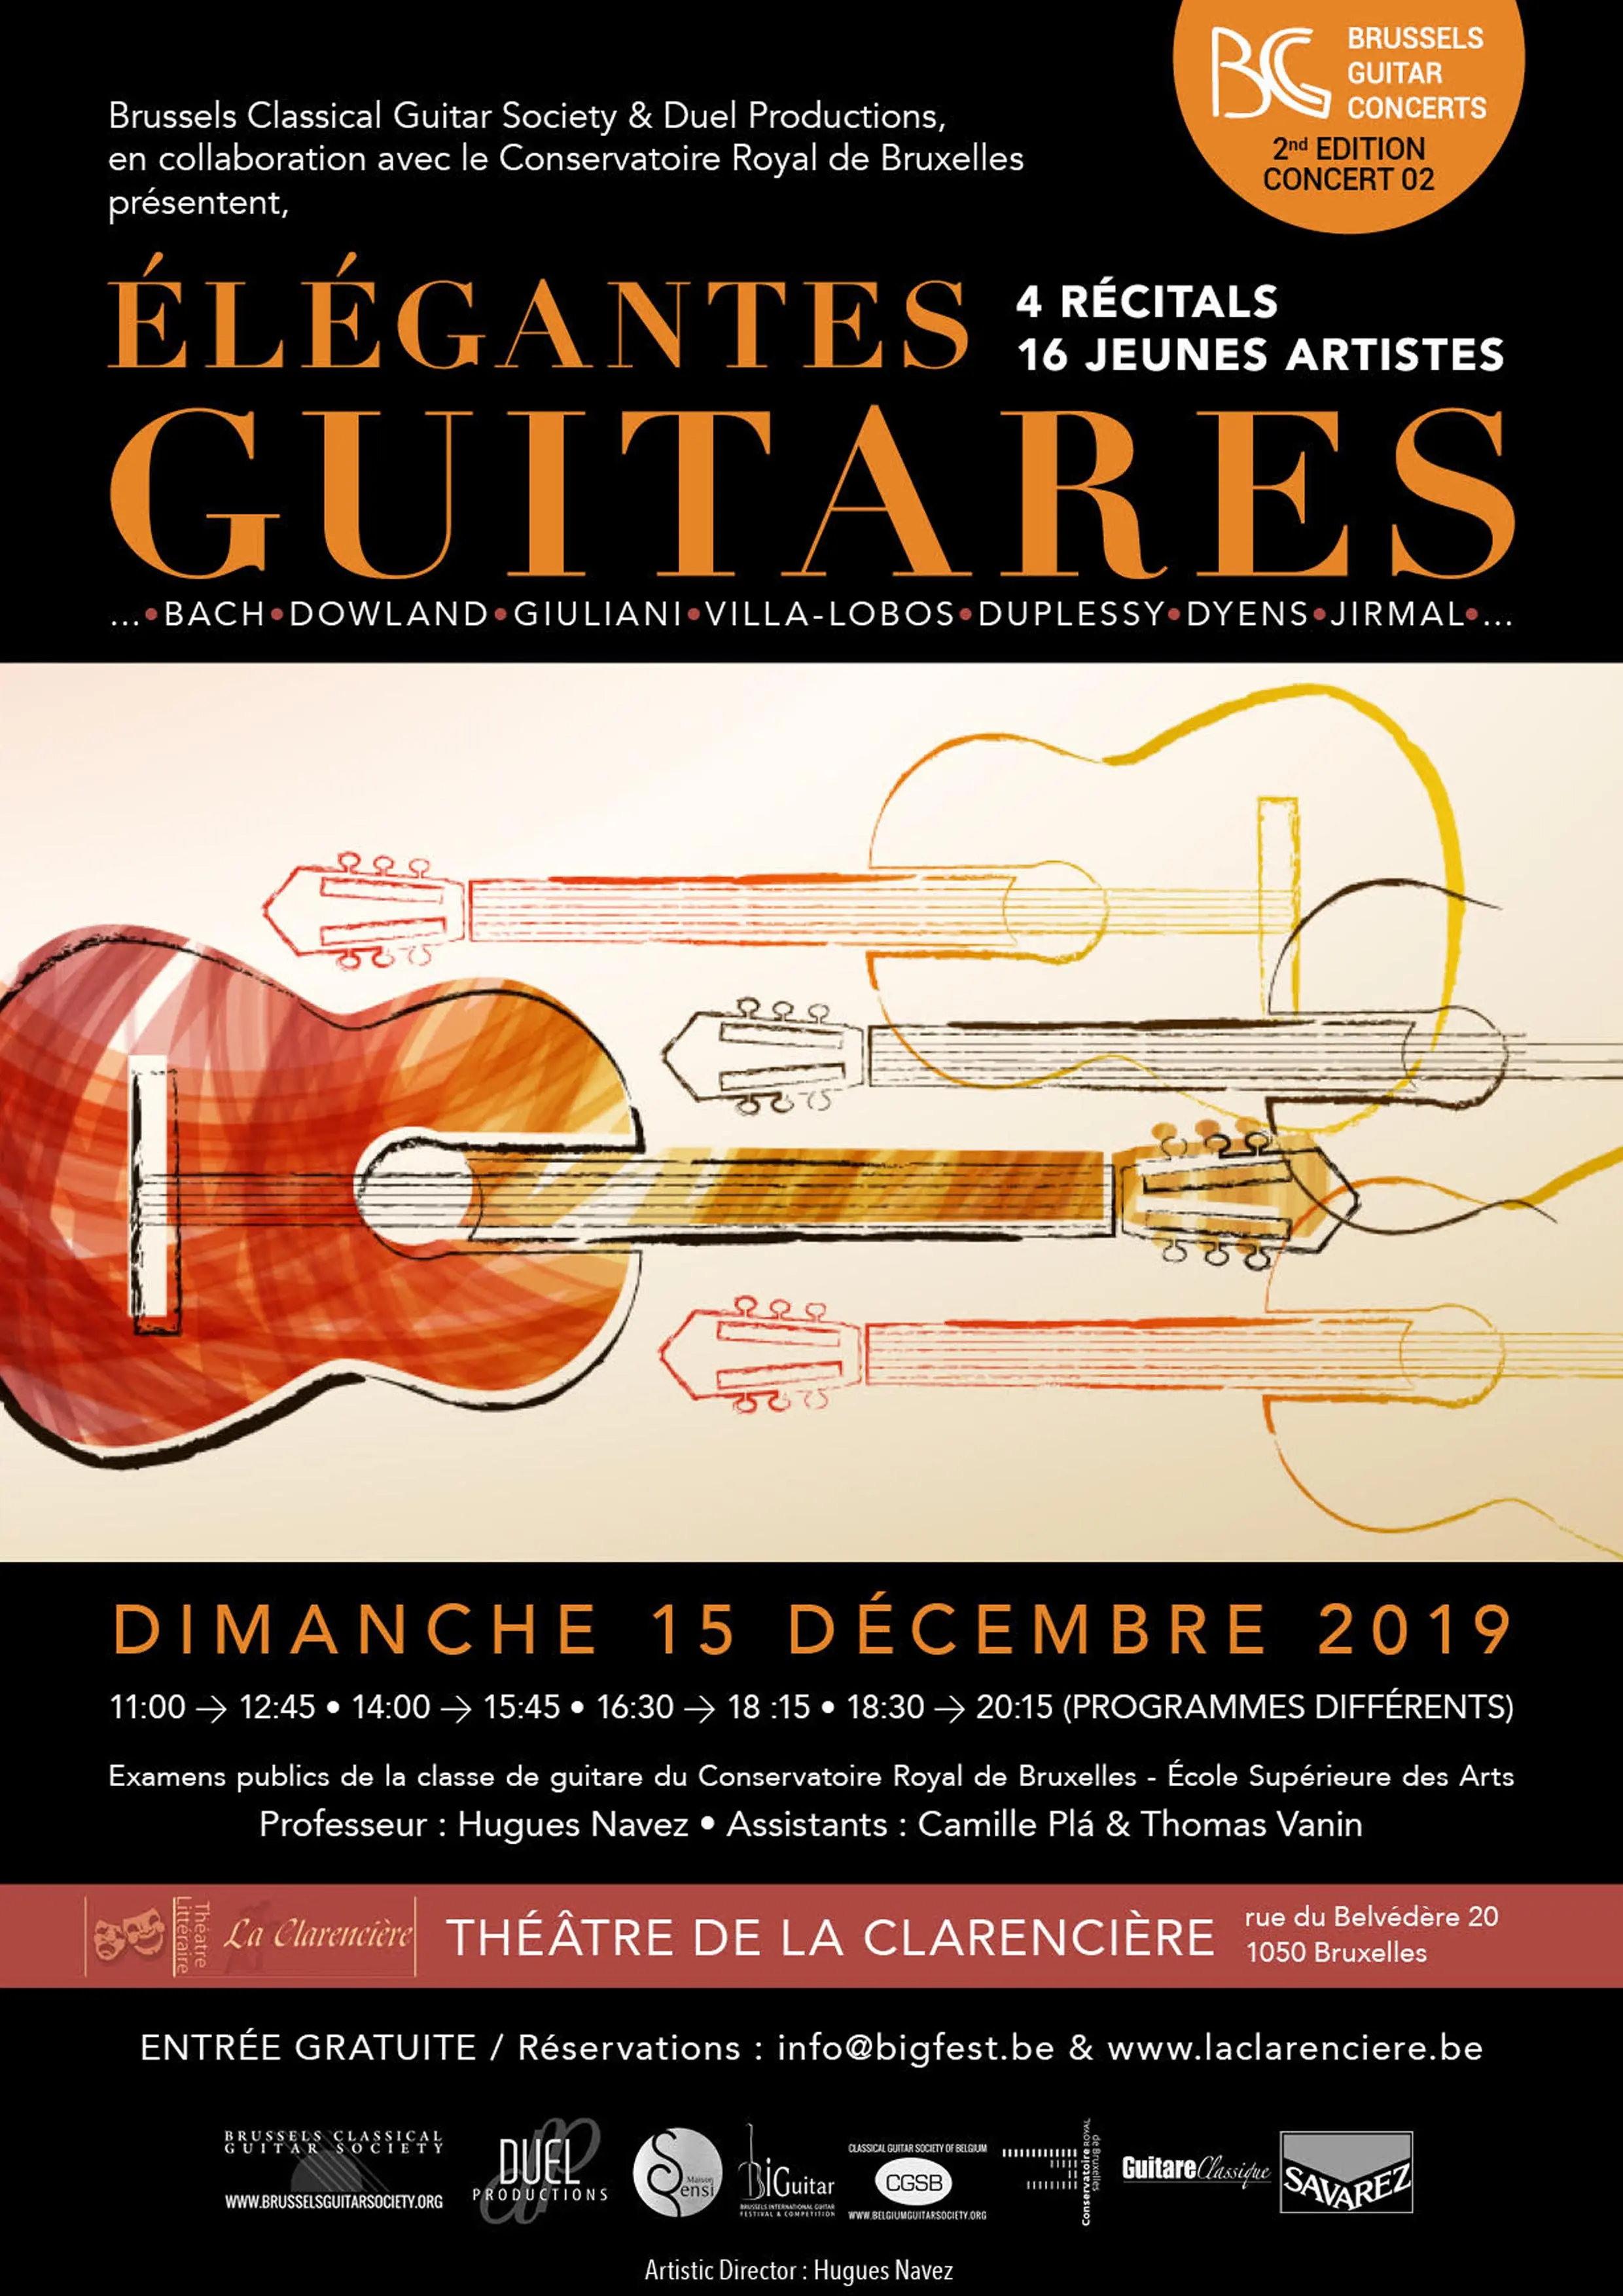 16 young artists – 4 recitals - « Élégantes Guitares » - Brussels Guitar Concerts